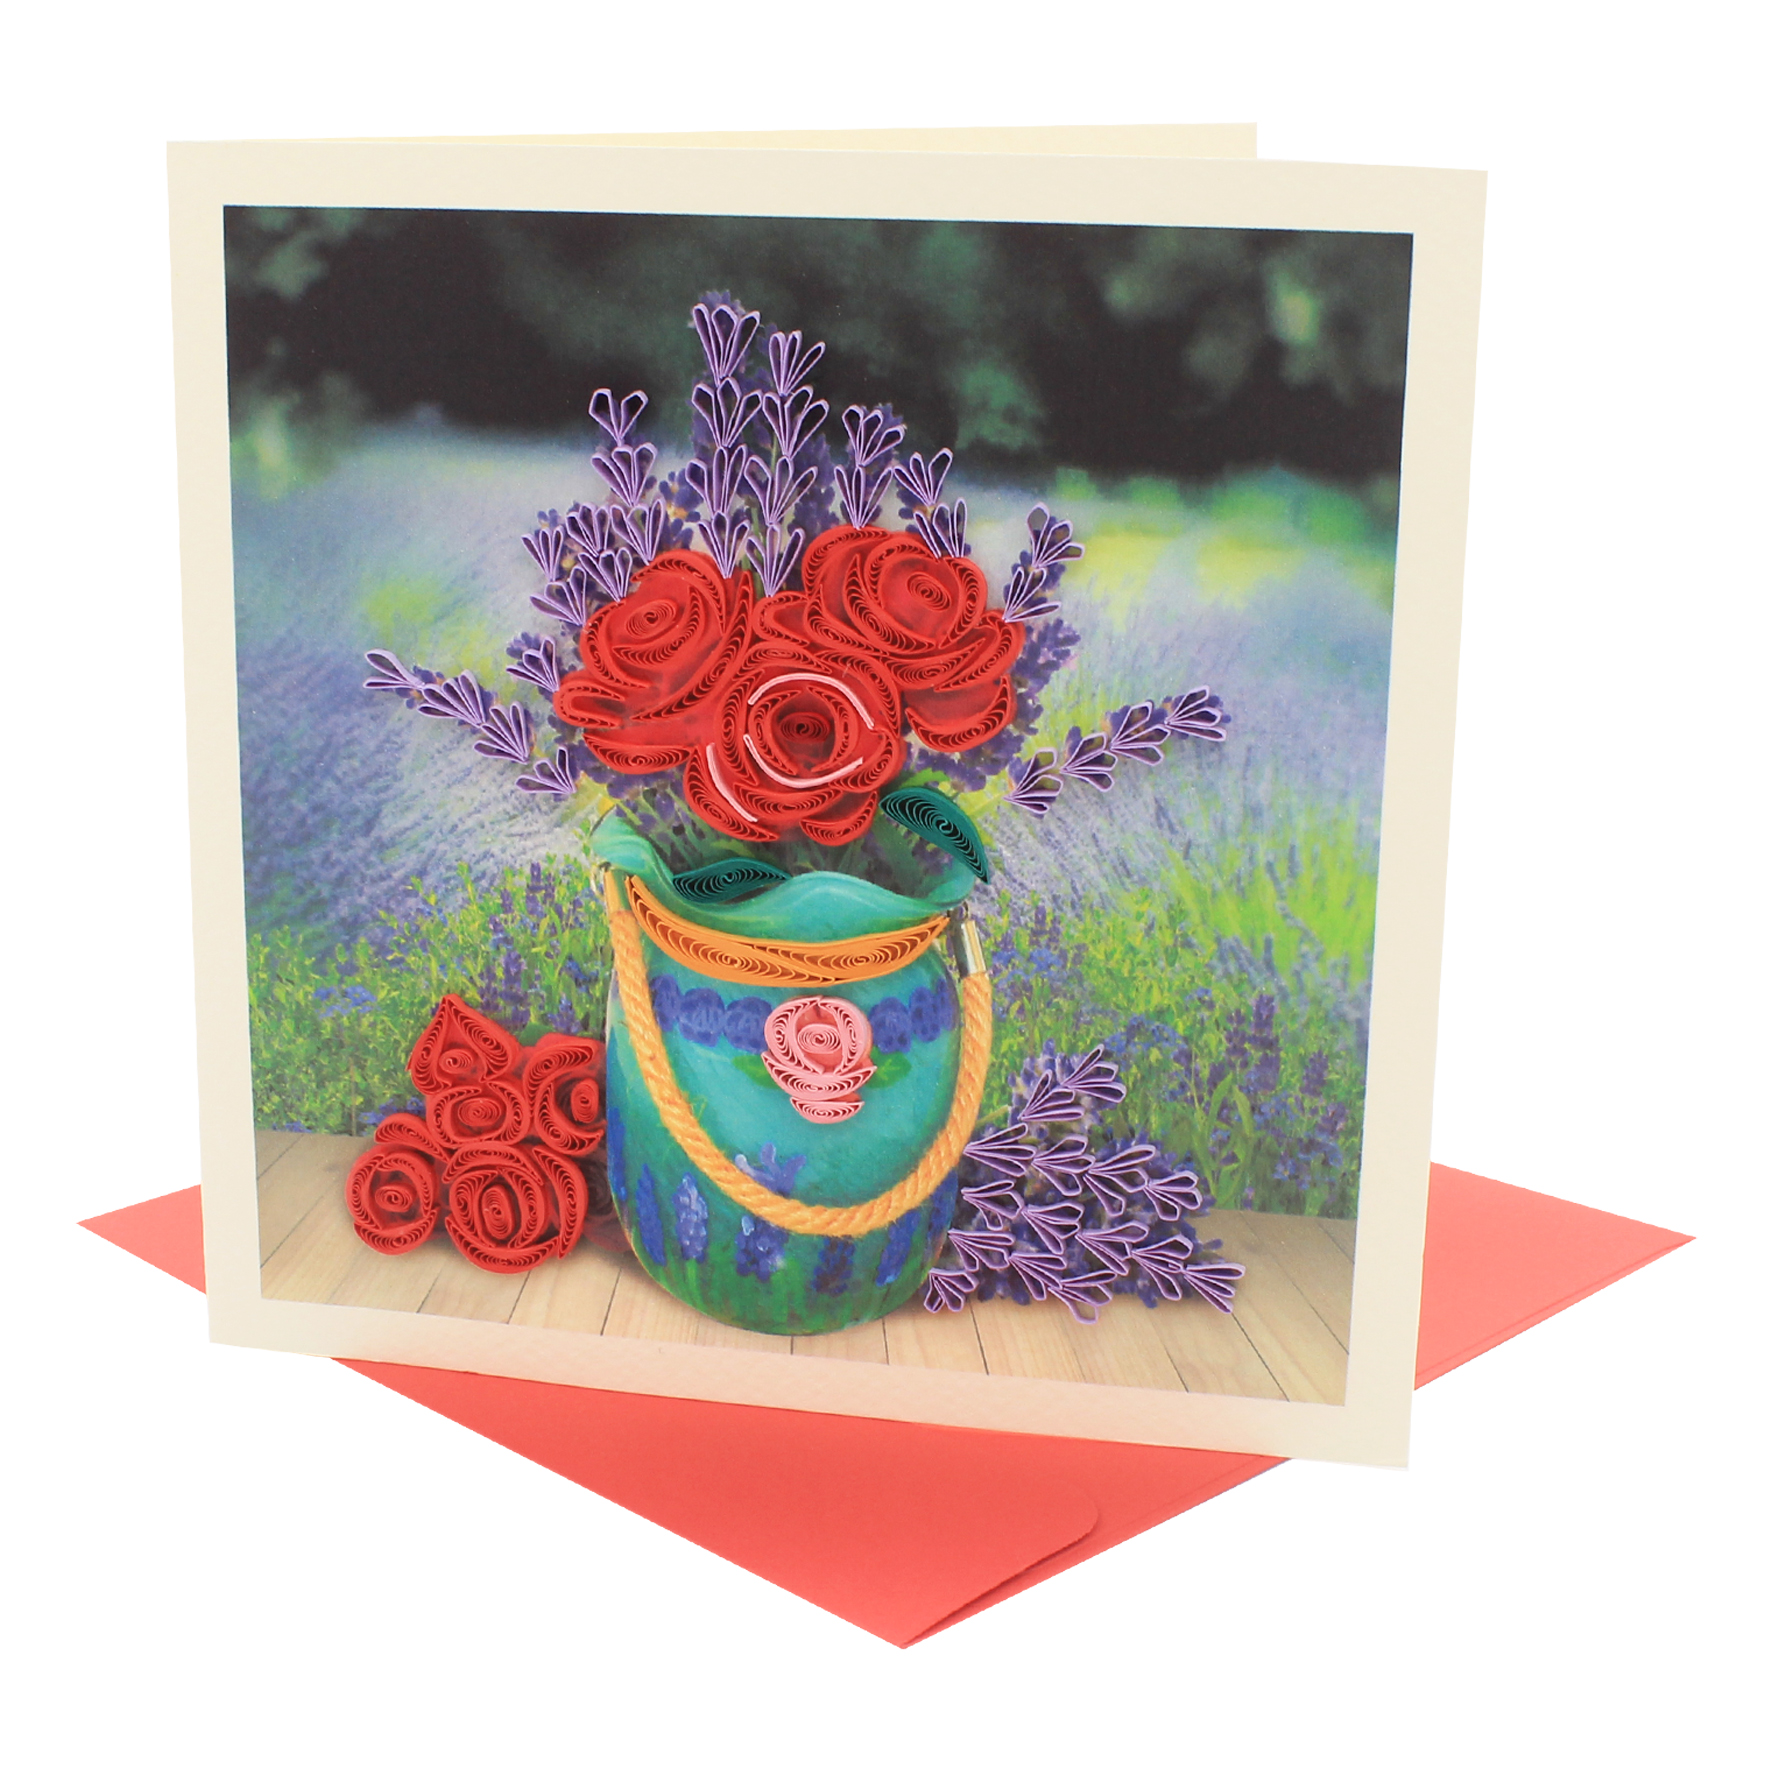 Thiệp Handmade - Thiệp Bình hoa hồng nghệ thuật giấy xoắn (Quilling Card) - Tặng Kèm Khung Giấy Để Bàn - Thiệp chúc mừng sinh nhật, kỷ niệm, tình yêu, cảm ơn...